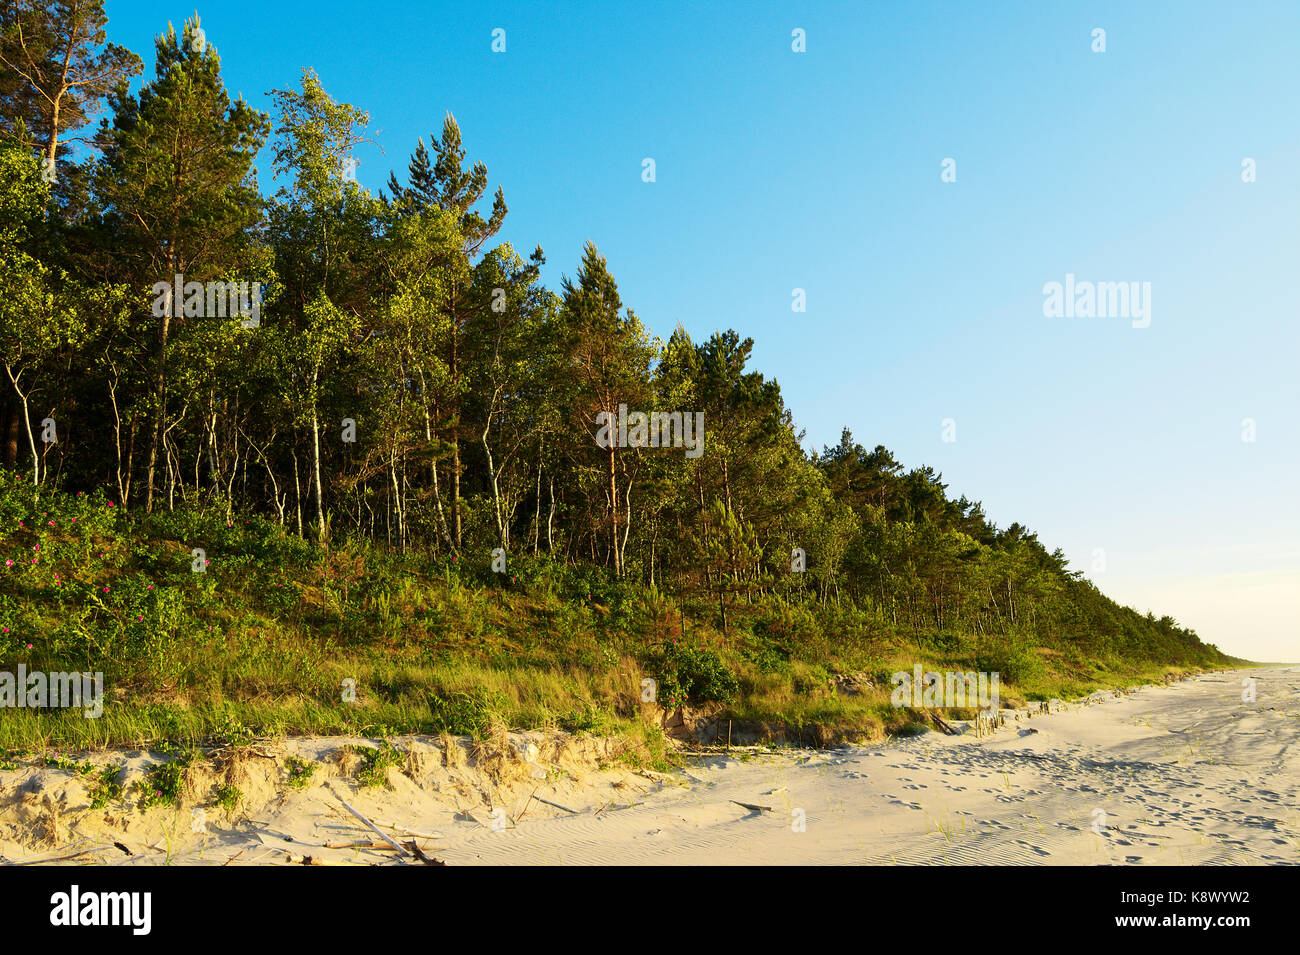 Pinewood wachsen auf Dünen an der Ostseeküste. Scots oder Schottische Kiefer Pinus sylvestris Bäume in immergrüne Nadelwald. Stegna, Pommern, Polen. Stockfoto